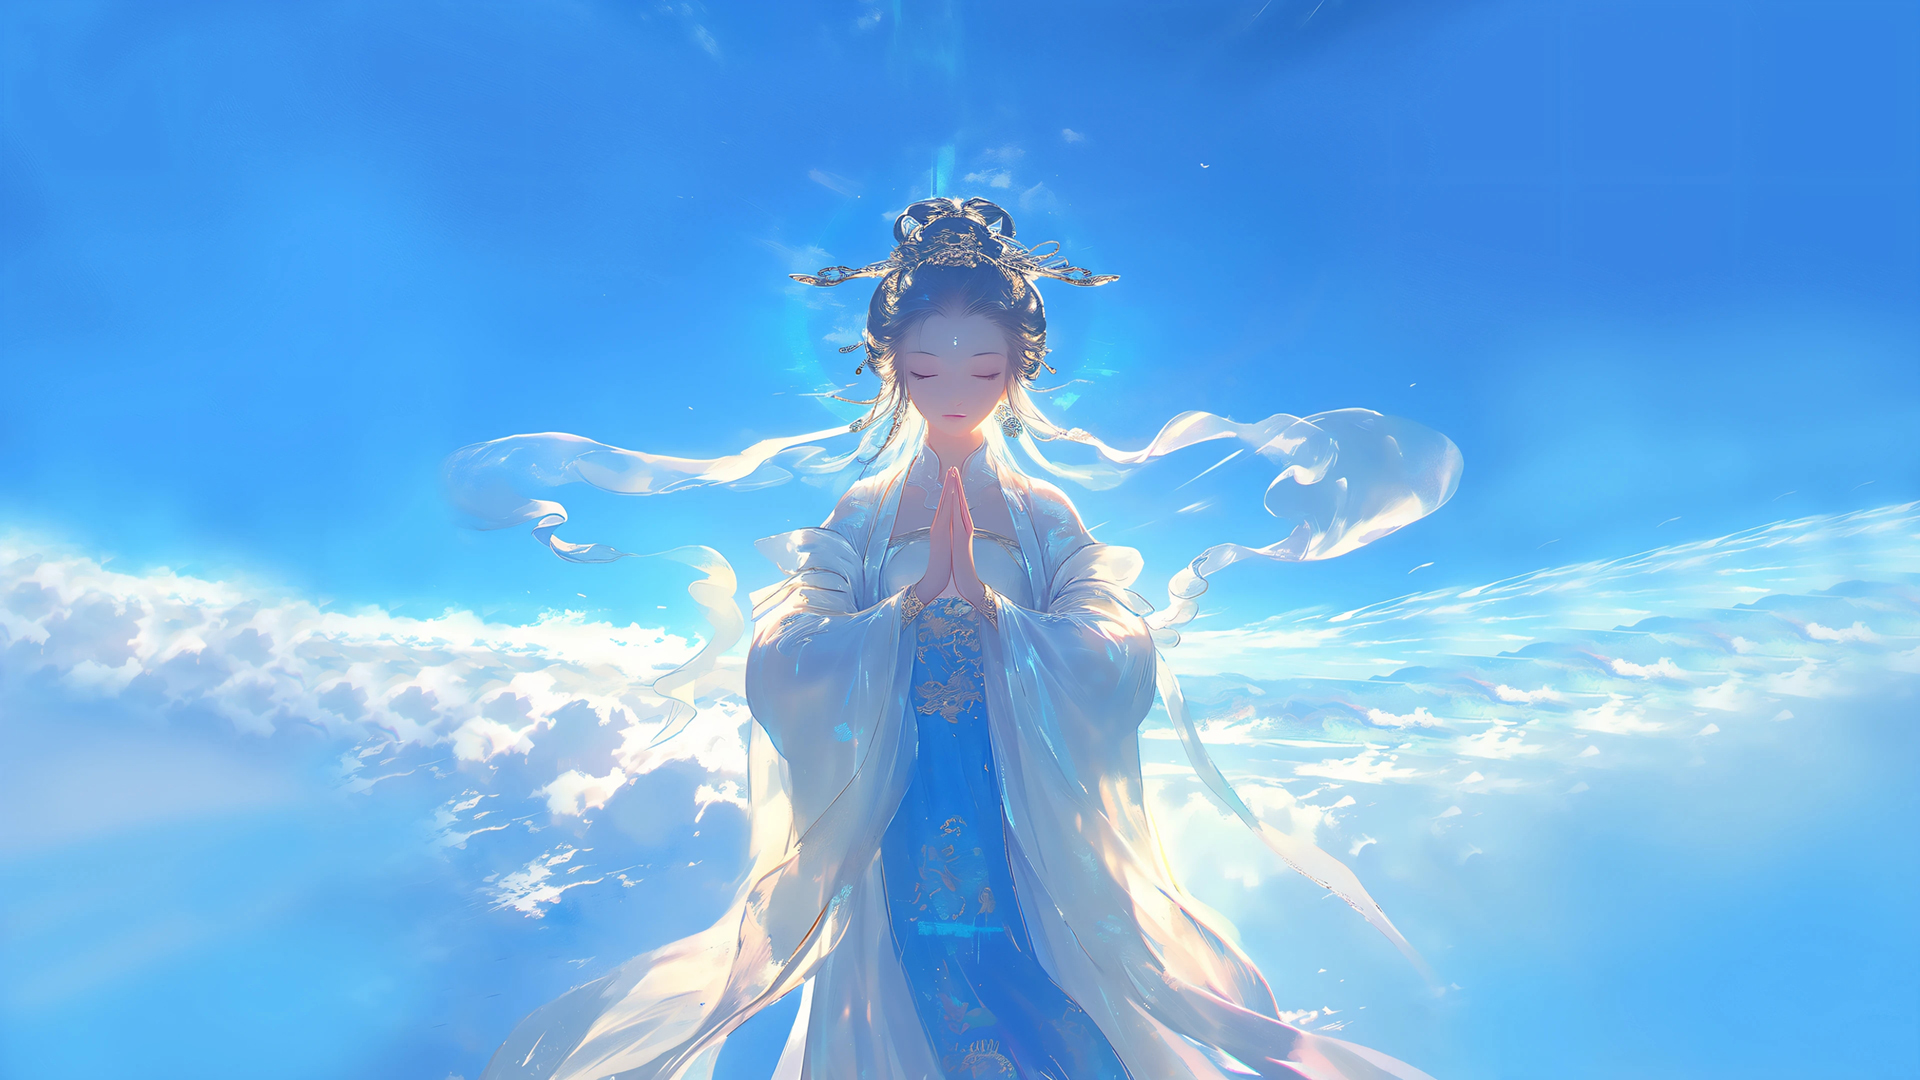 佛系 女神 仙女 双手合十 蓝色天空 动漫壁纸